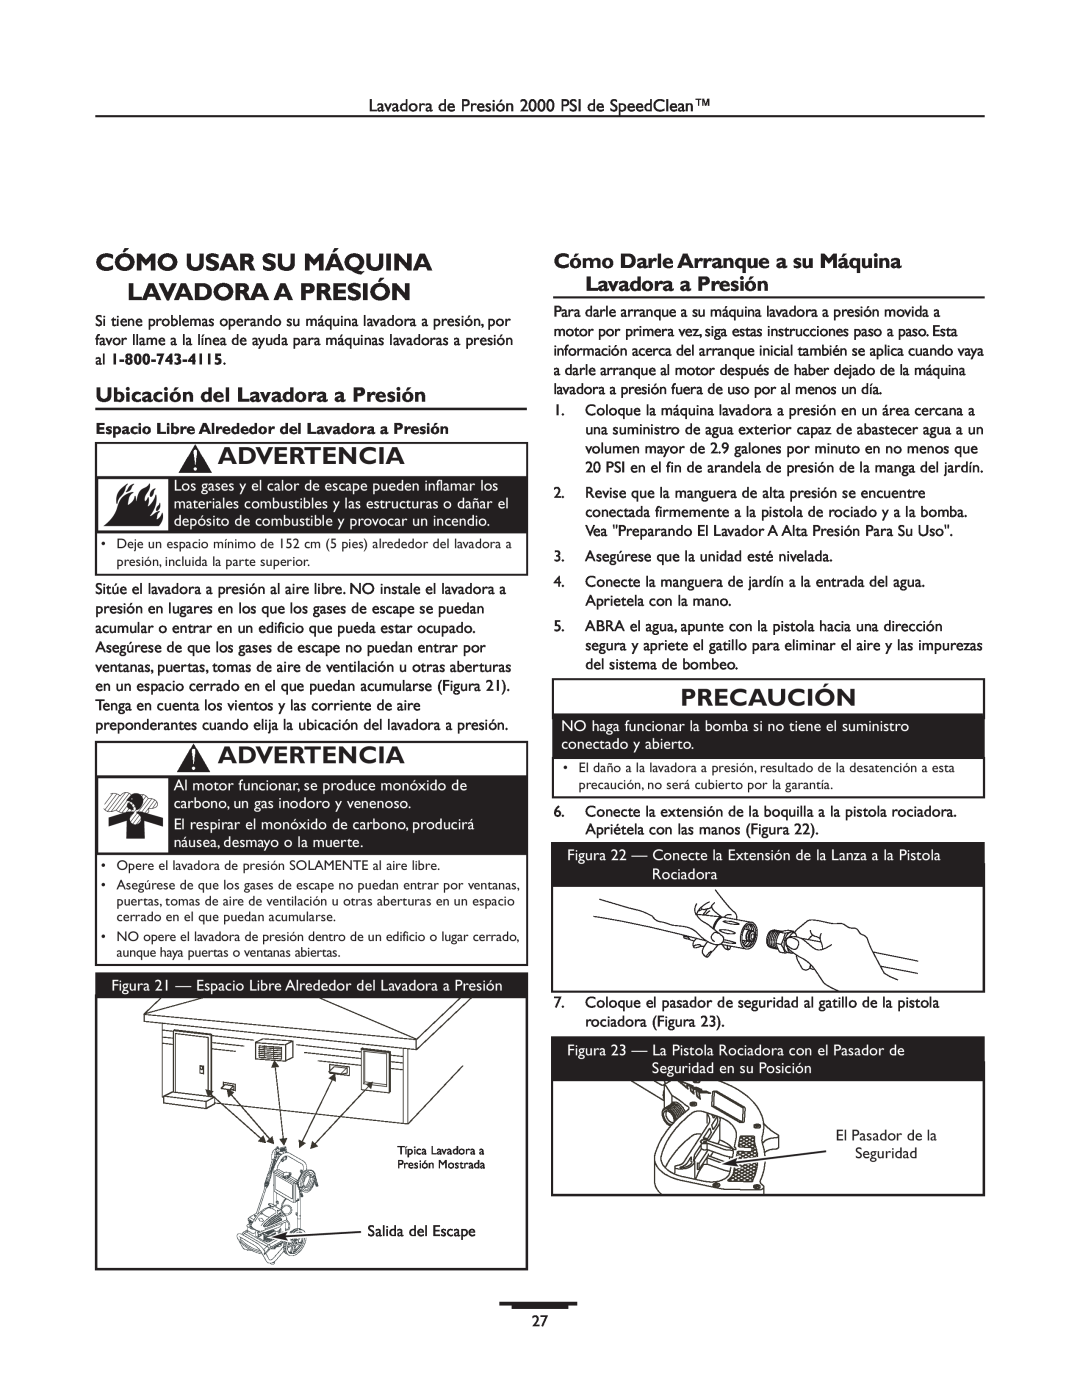 Briggs & Stratton 020238-0 Cómo Usar Su Máquina Lavadora A Presión, Ubicación del Lavadora a Presión, Advertencia 